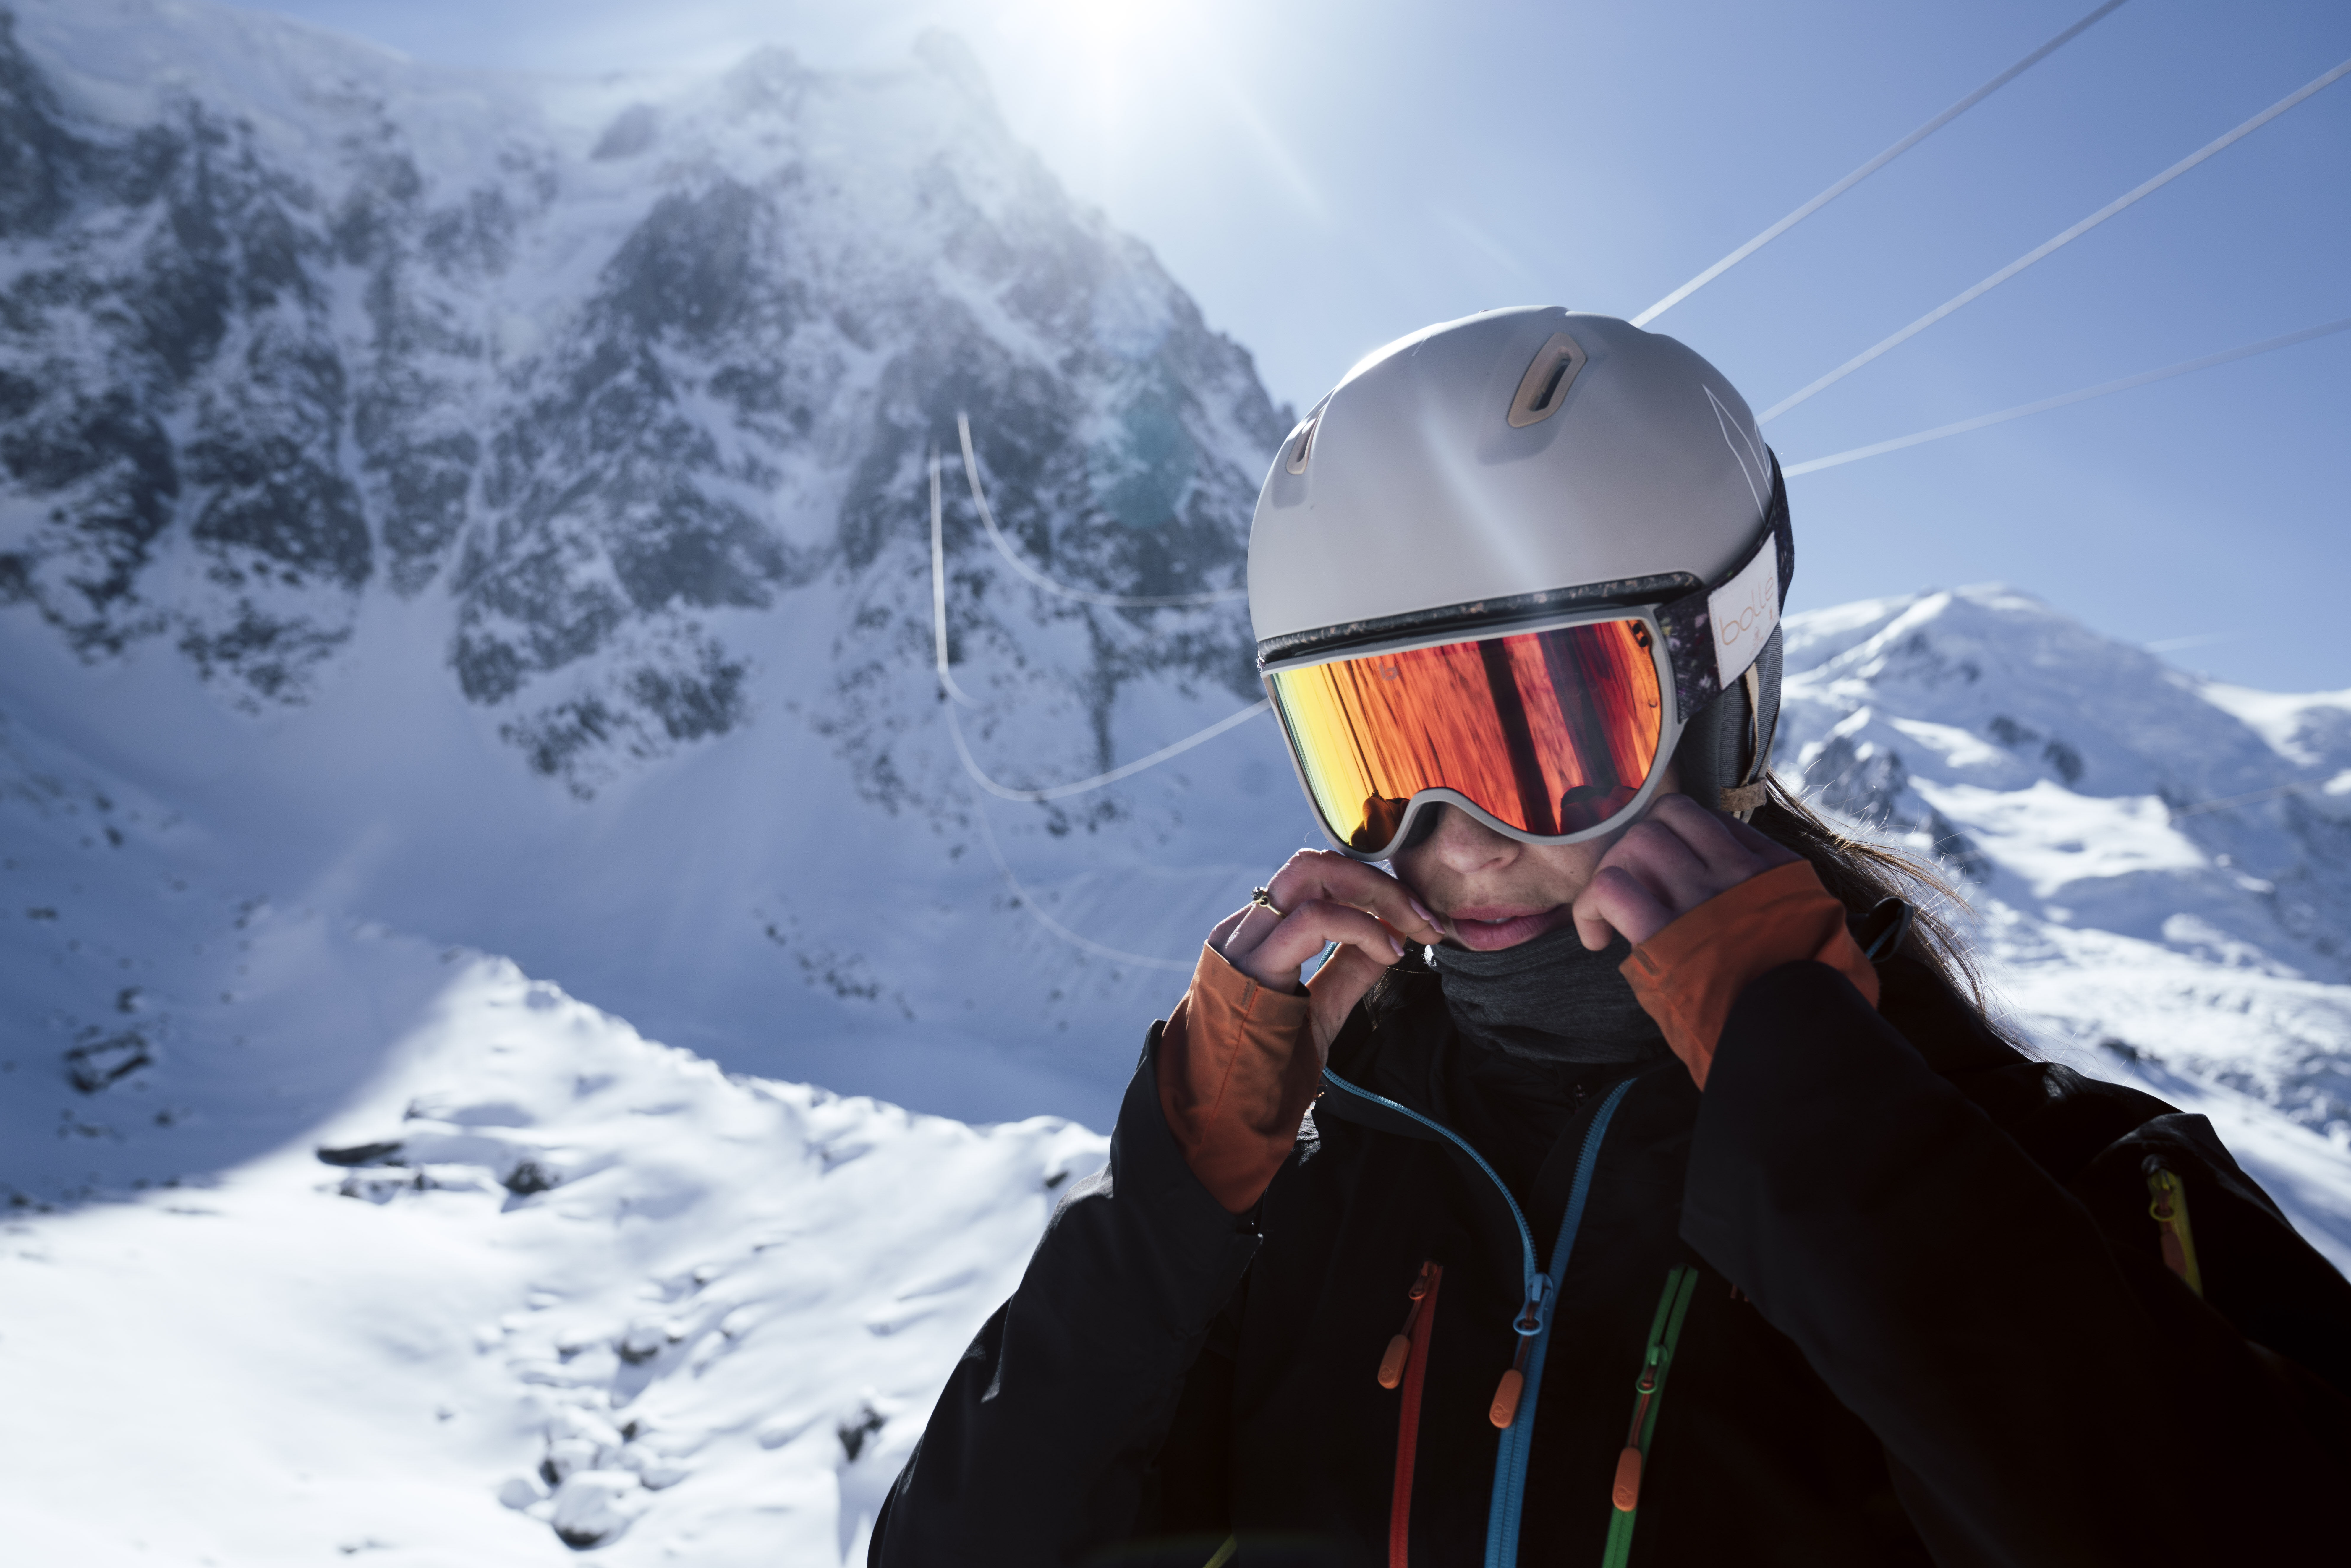 Masque de ski photochromique : quels avantages ?